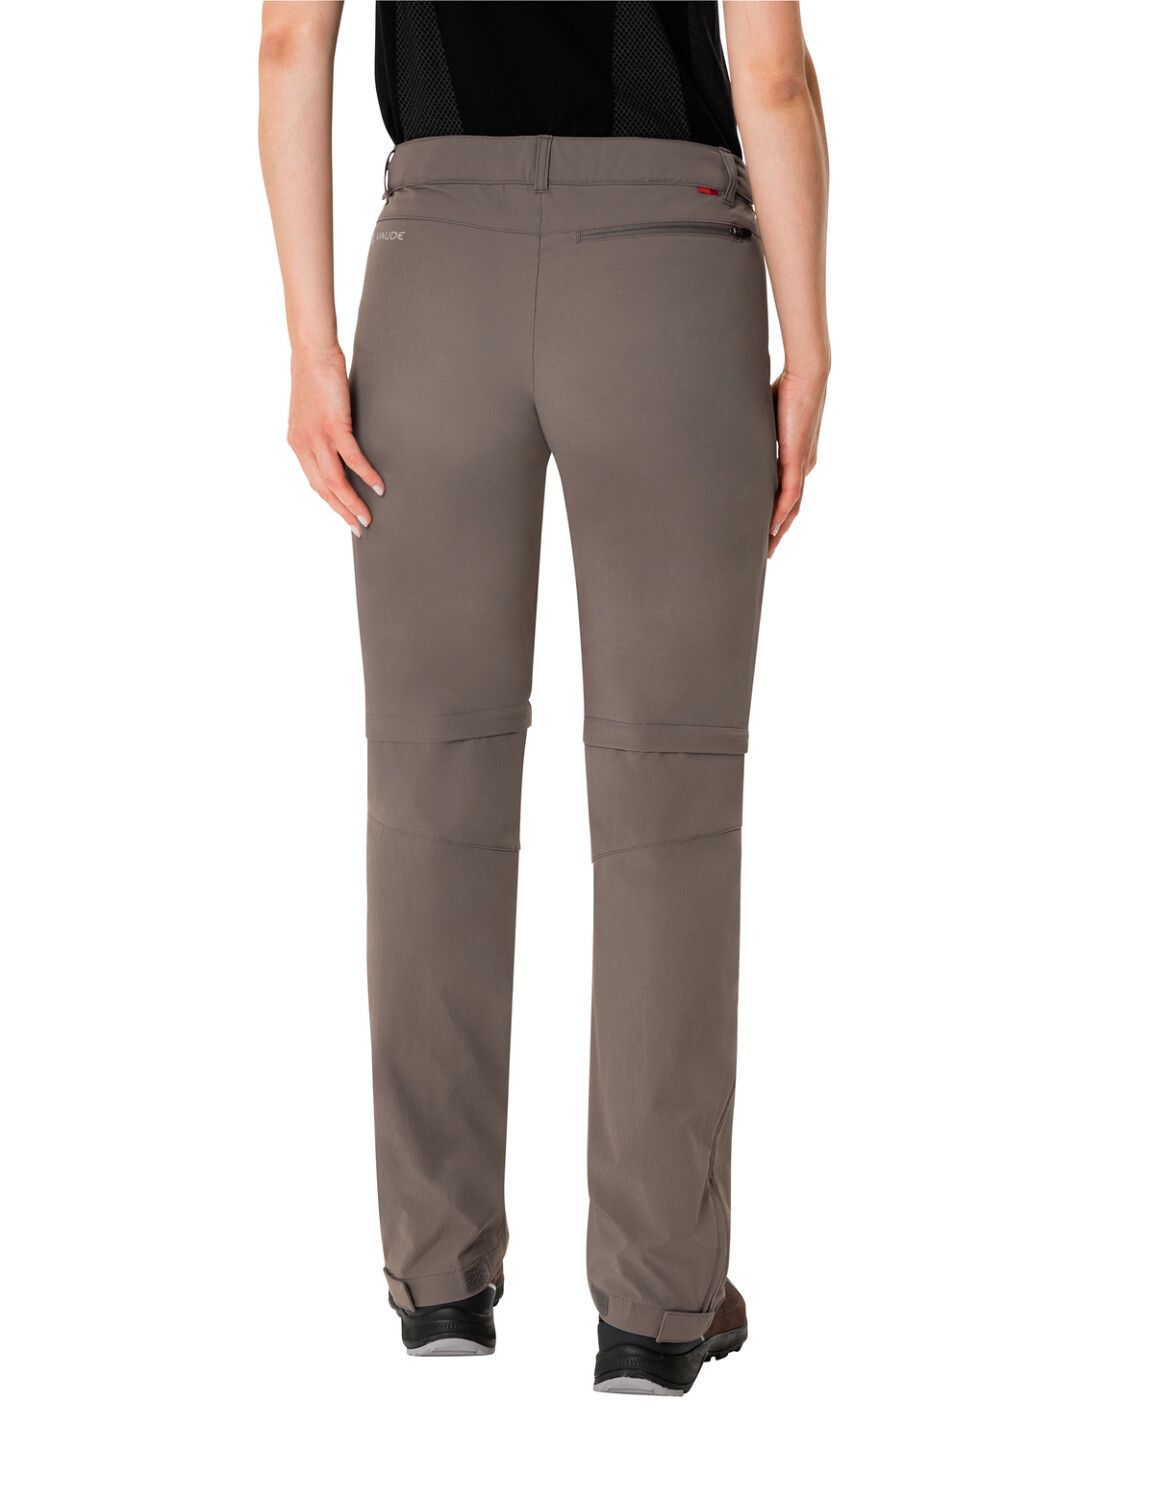 VAUDE Women's Farley Stretch ZO T-Zip Pants (Bild 40)